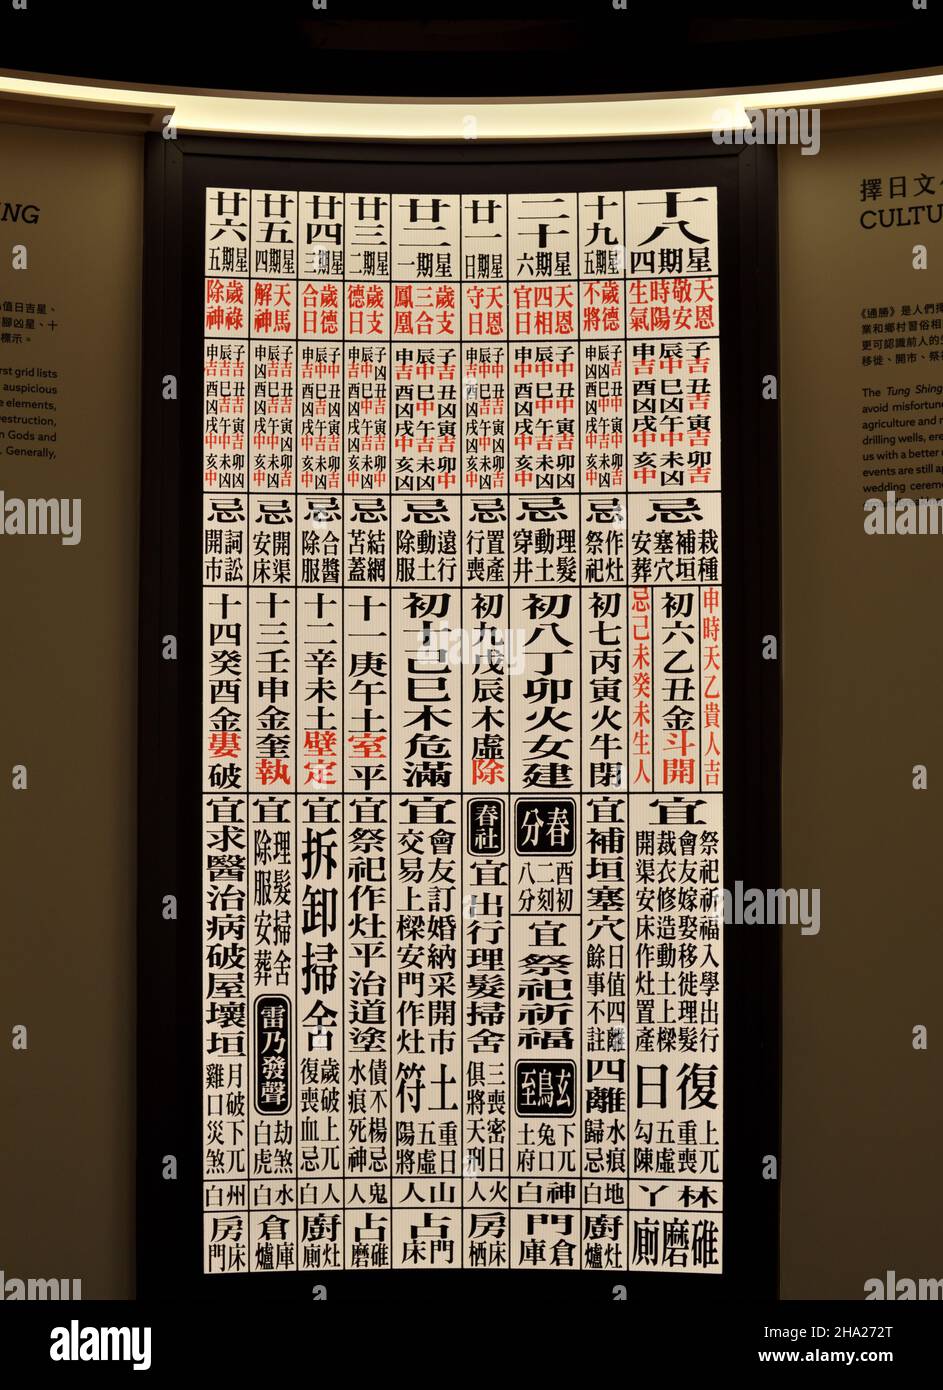 Une page complète d'almanach chinois affichée sur un grand écran mural à l'intérieur du Sam Tung UK Museum, Hong Kong Banque D'Images